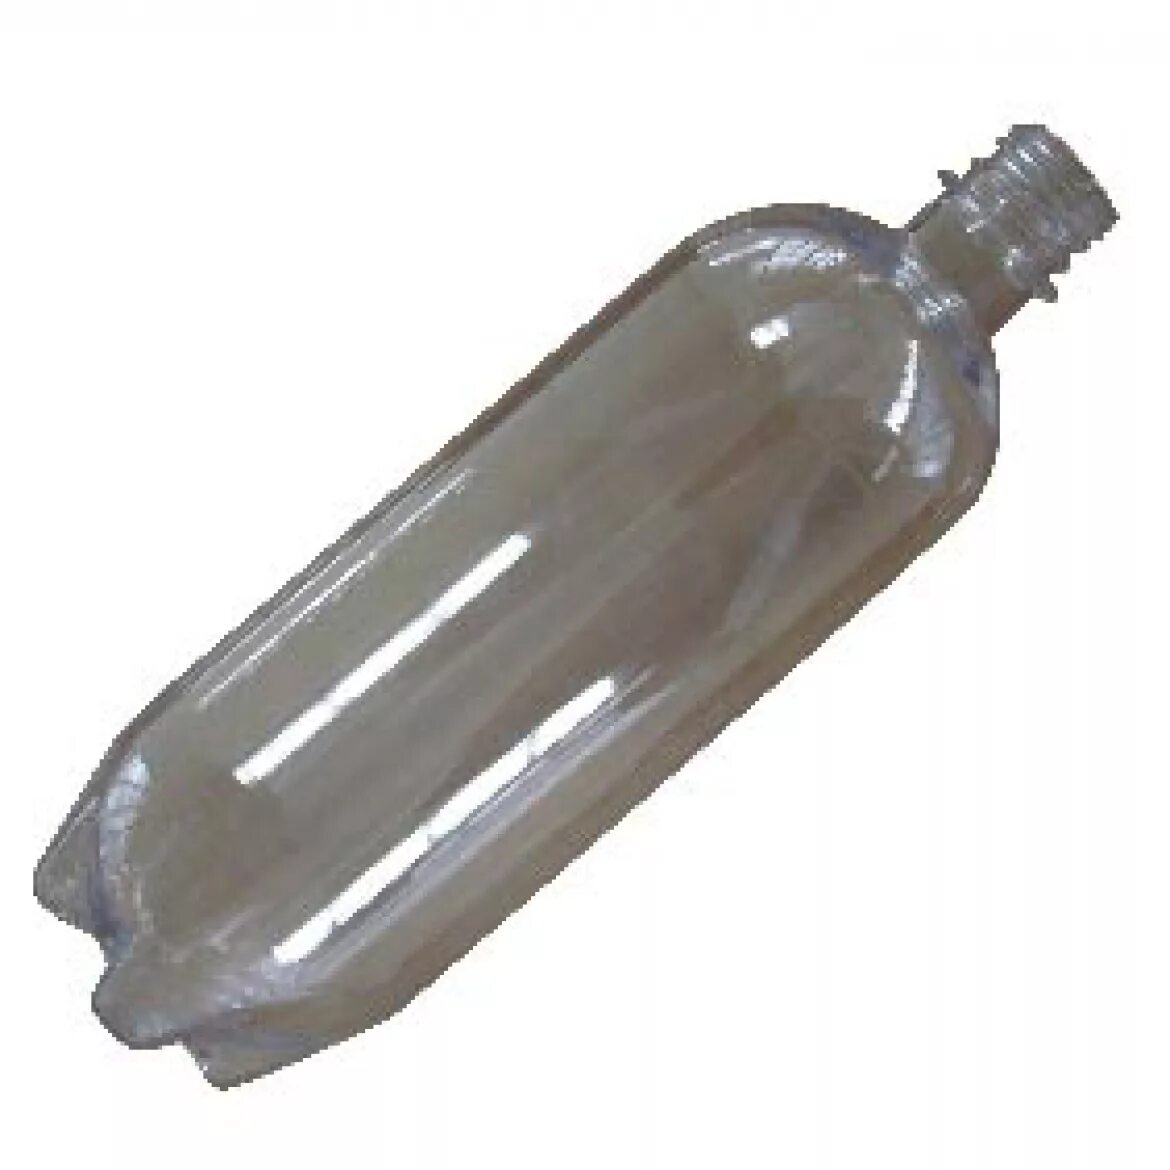 Бутылка для дистиллированной воды. Полиэтиленовая бутыль для дистиллированной воды. Бутылочка с дистиллированной водой. Бутыль полипропилен.